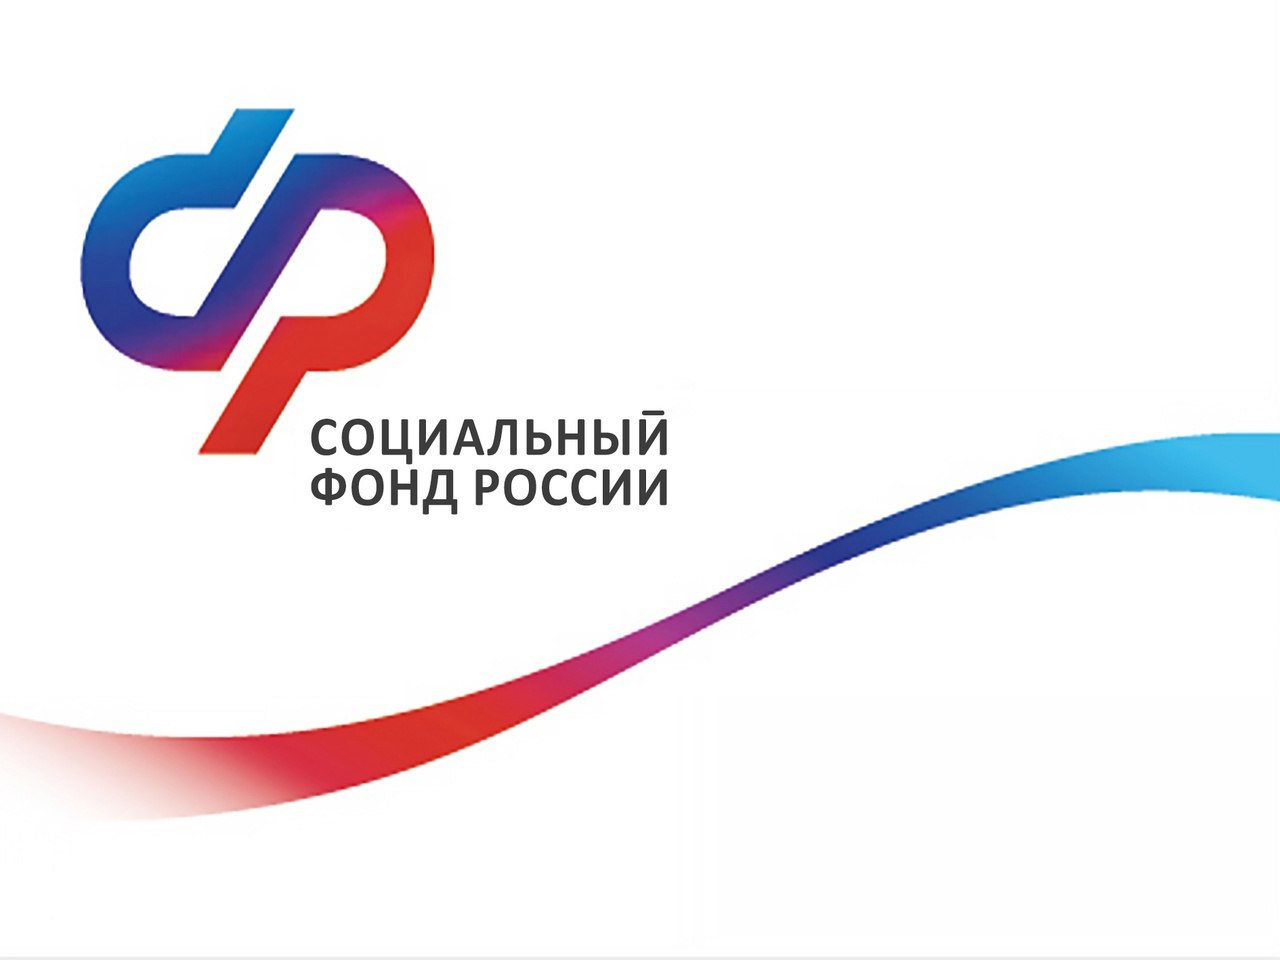 Последняя суббота мая будет рабочей во всех клиентских службах Отделения СФР по Воронежской области.